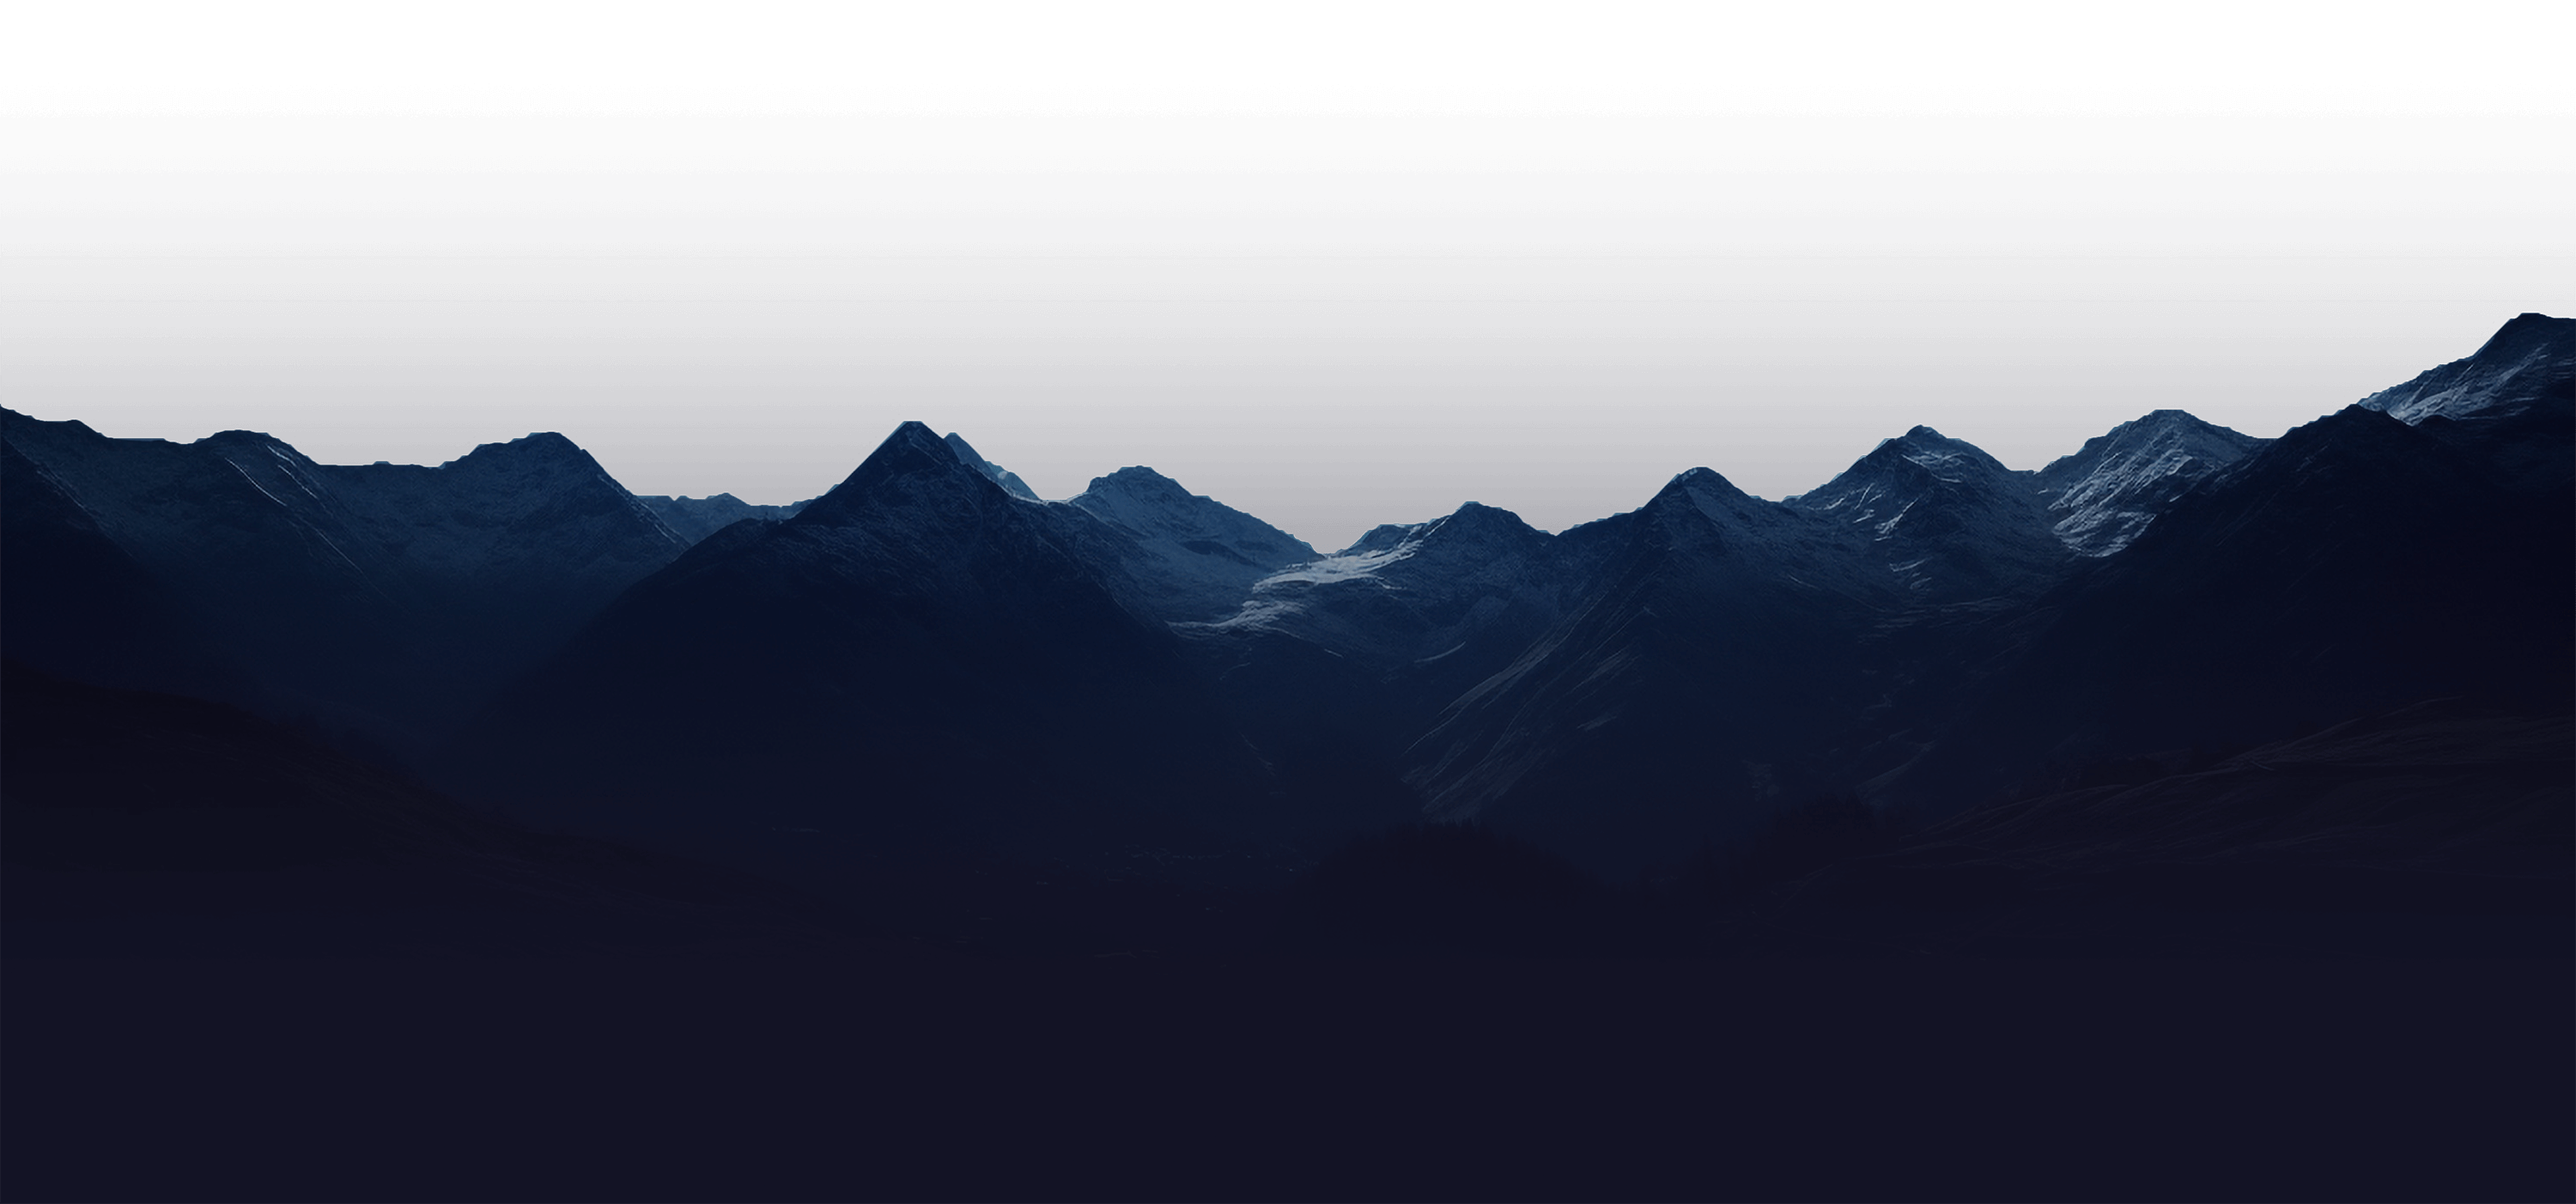 Werbeagentur Wien Berge bei Nacht